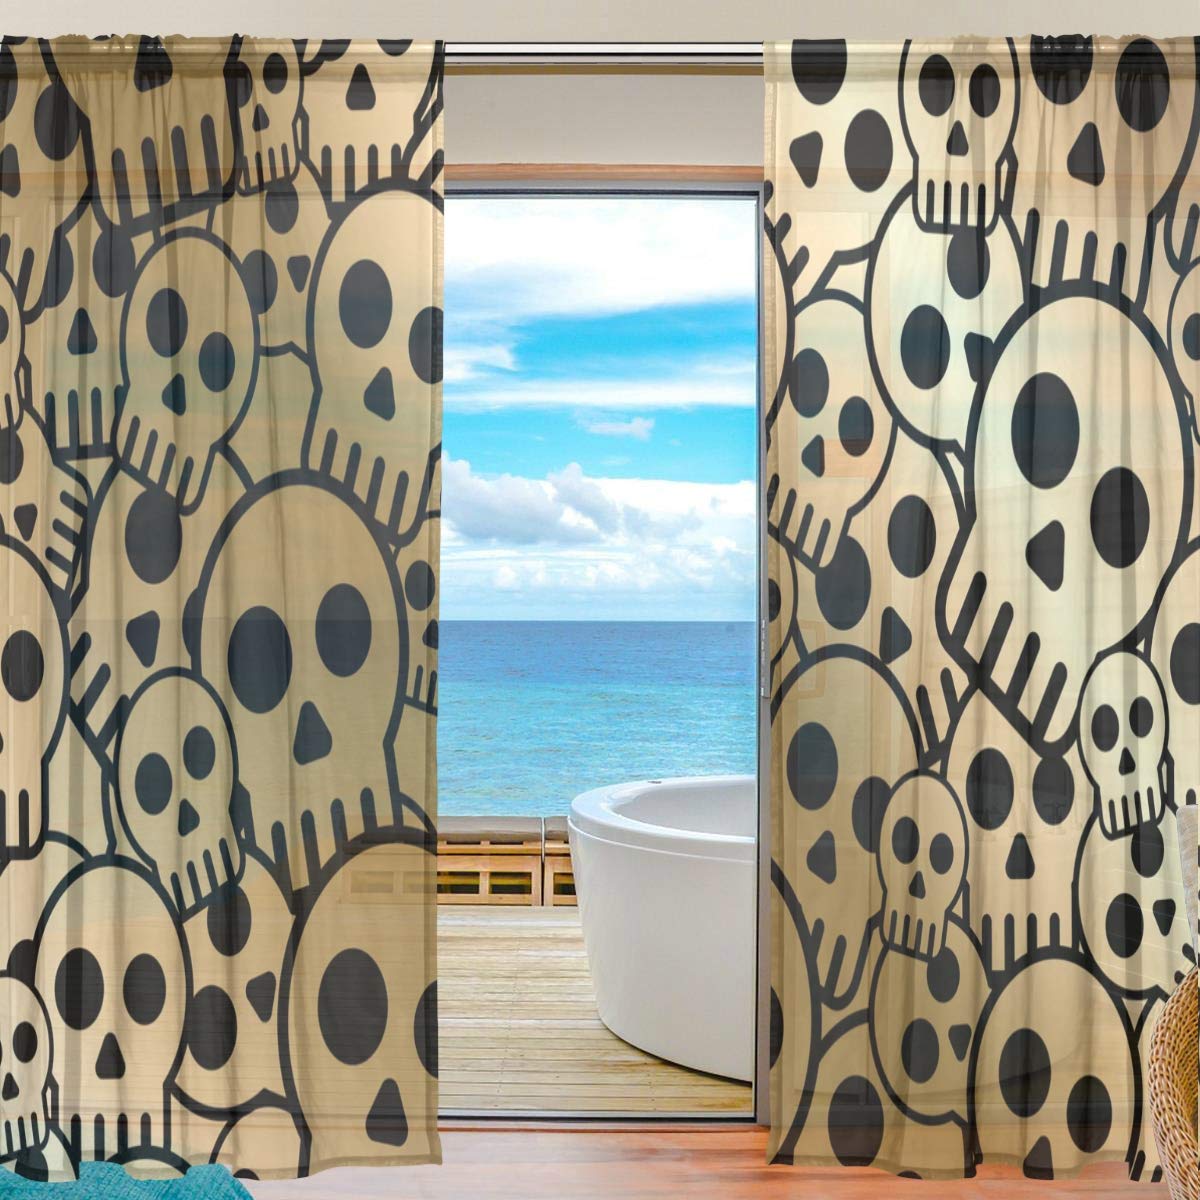 Yibaihe Mnsruu Halloween-Vorhänge mit Totenkopf-Motiv, 198 cm lang, Voile-Vorhang, Vorhänge für Wohnzimmer, Schlafzimmer, 2 Paneele